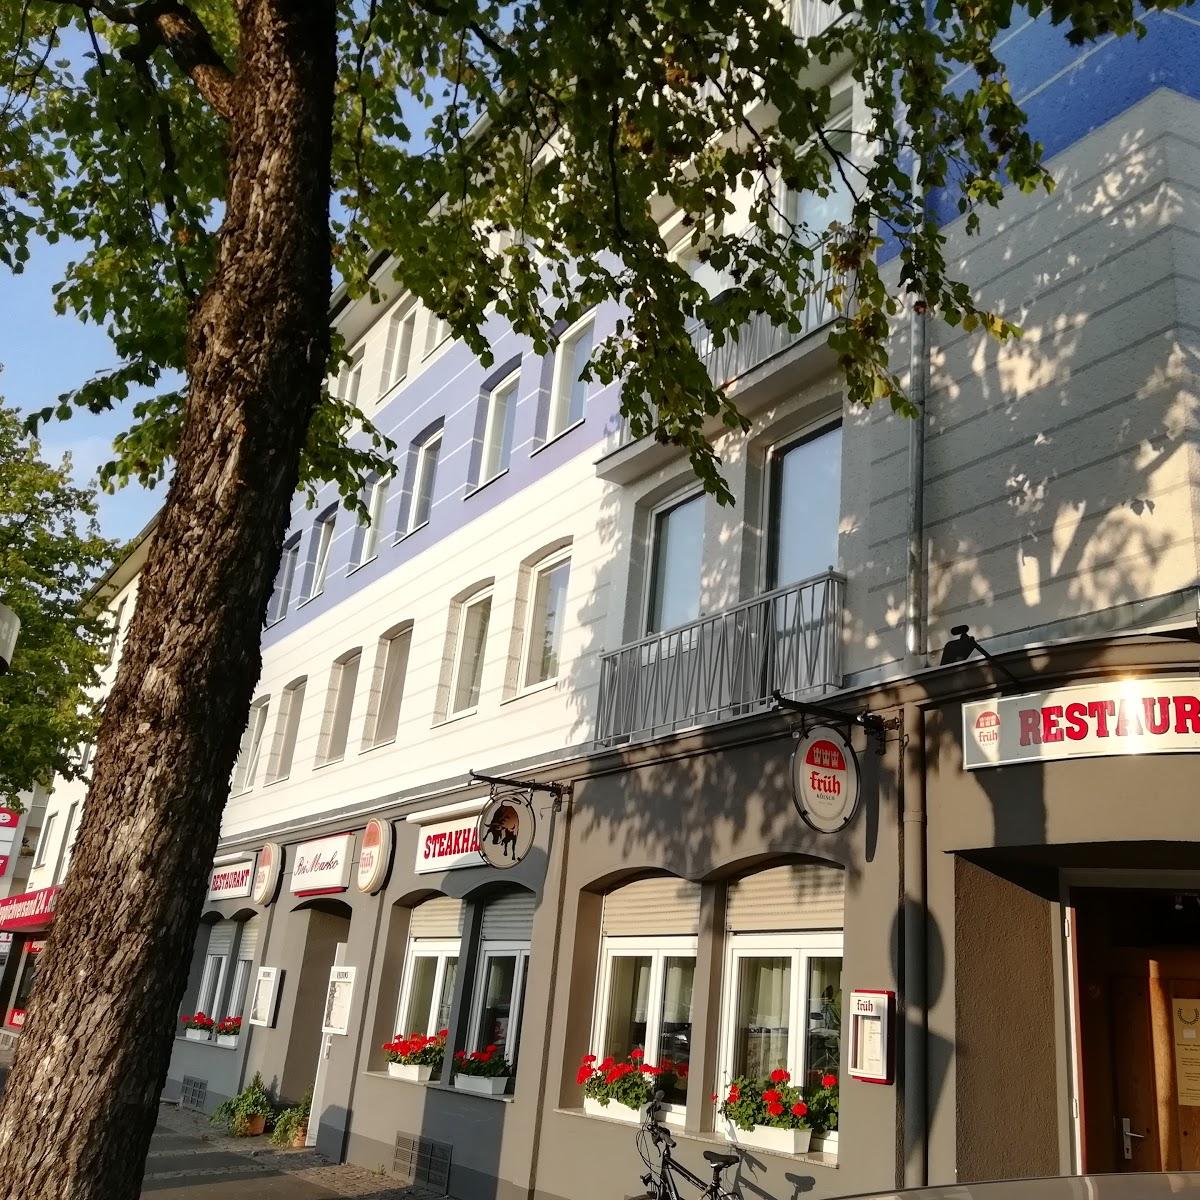 Restaurant "Bei Marko Steakhaus" in Köln